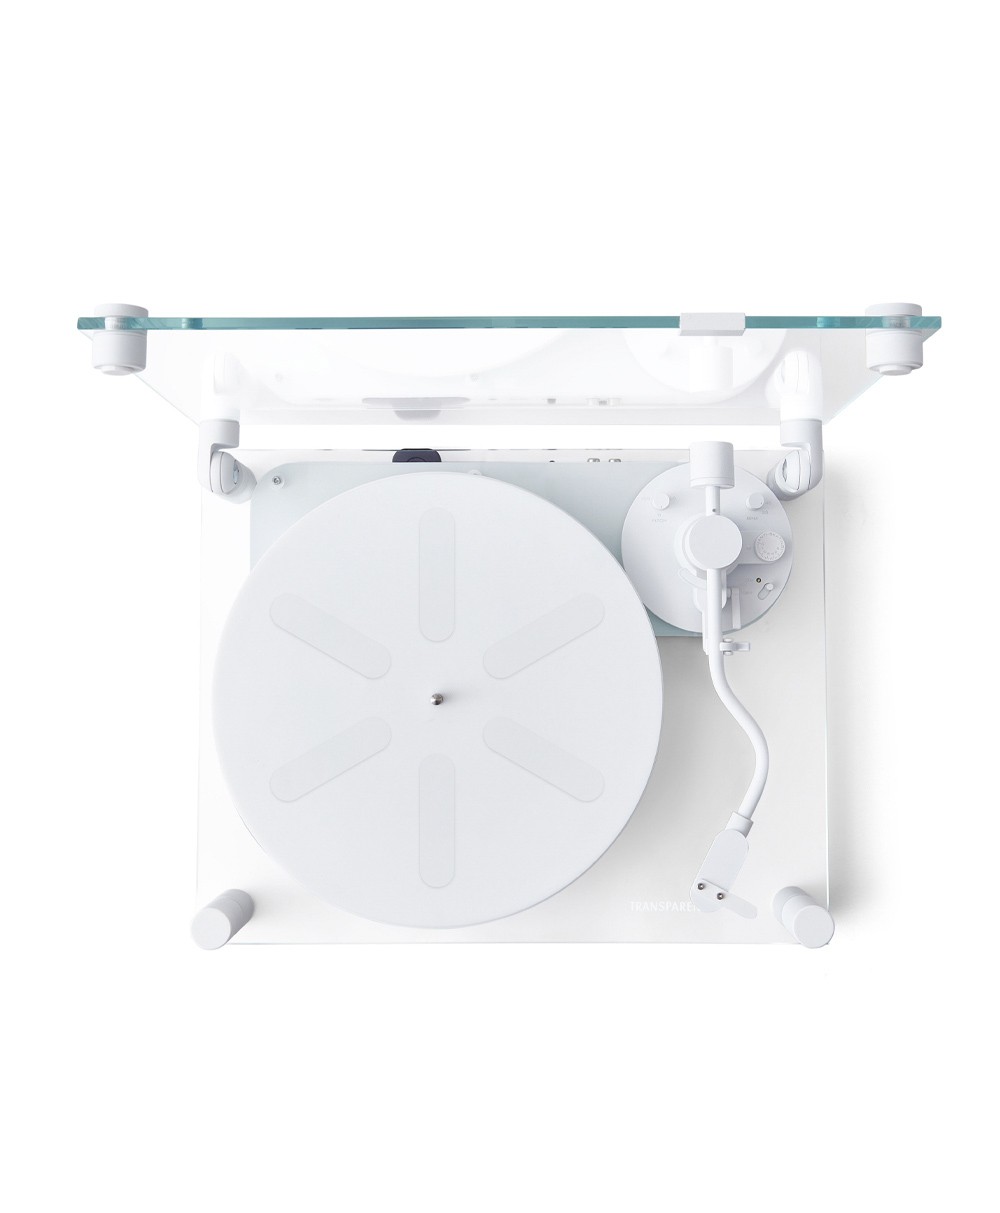 Hier ist ein Produktfoto des Transparent Turntables in der Farbe White von der Marke Transparent Sound zu sehen – im Onlineshop RAUM concept store